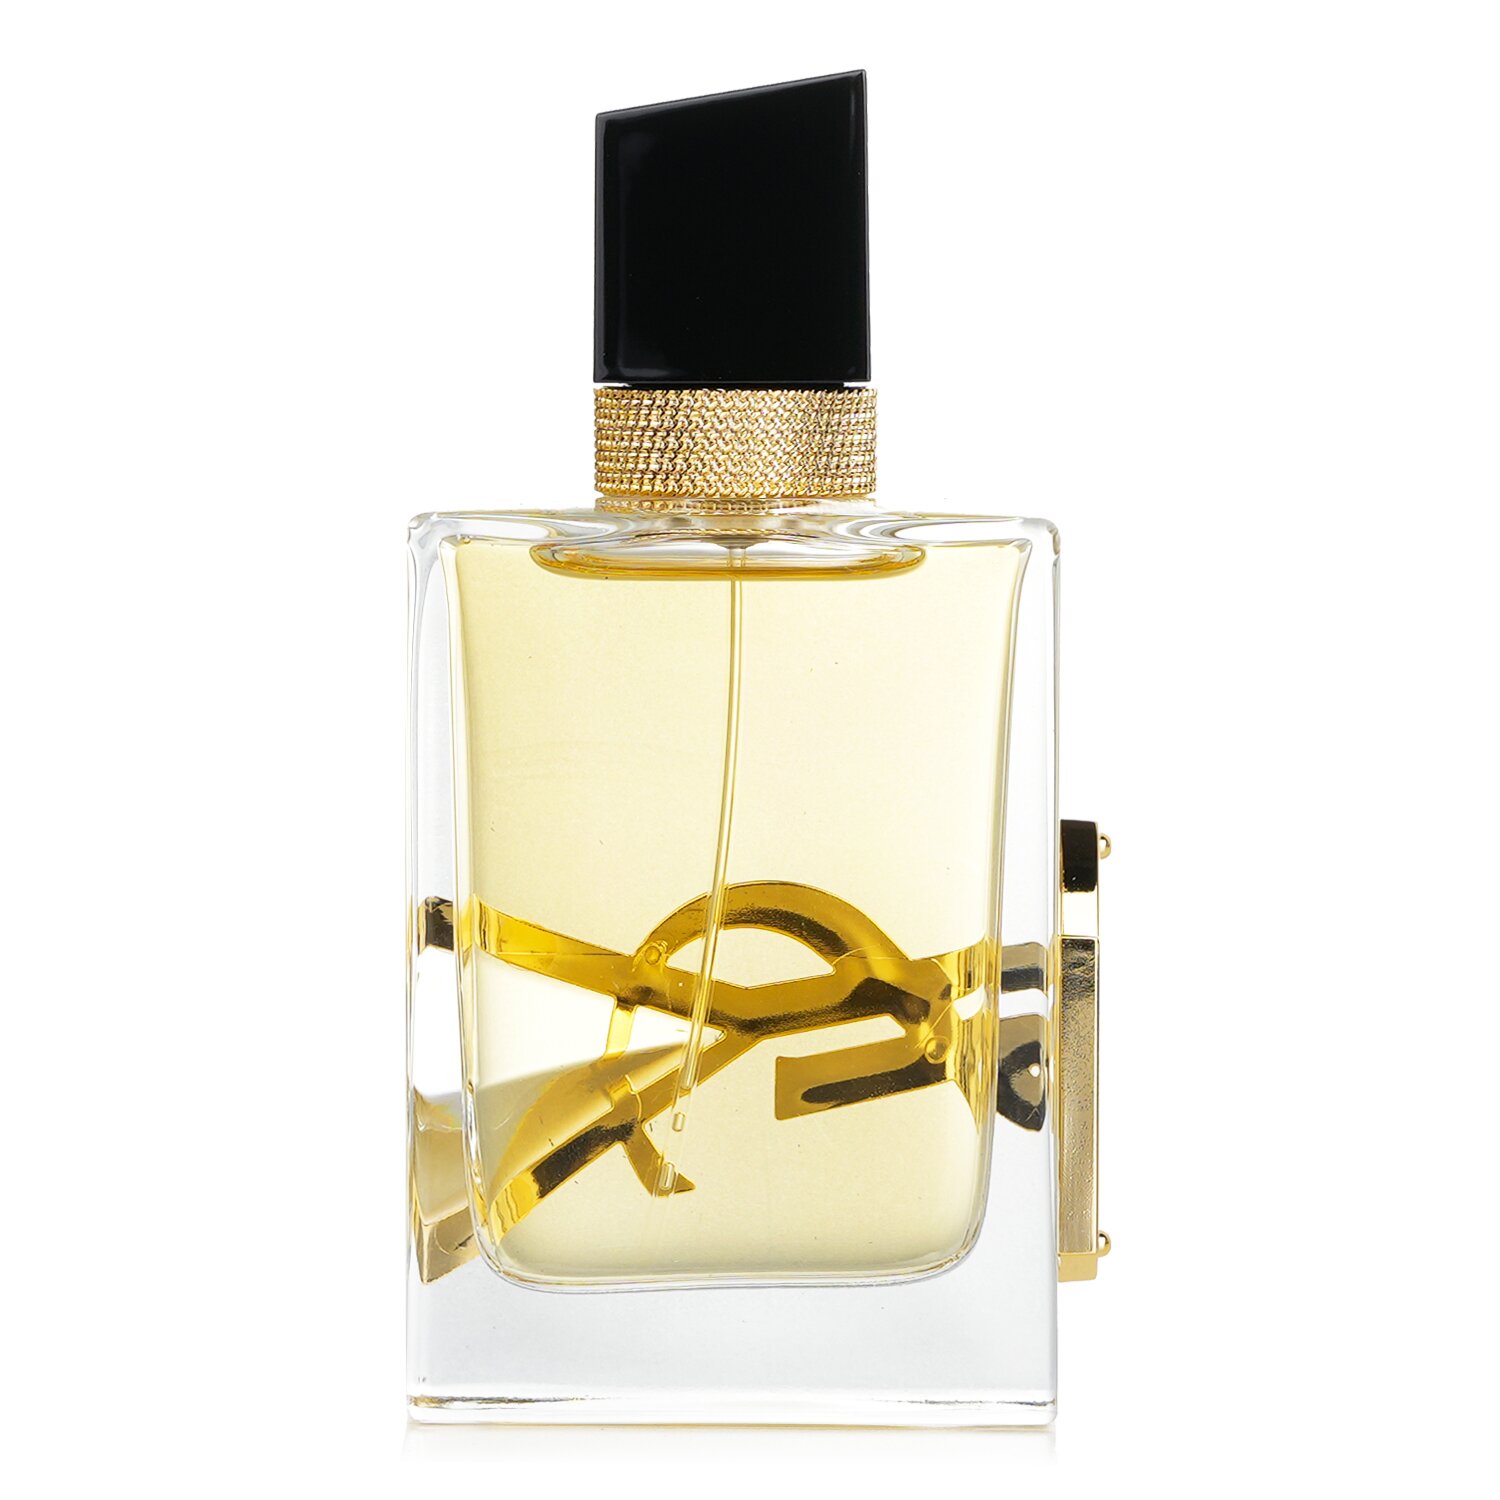 Yves Saint Laurent Libre Eau De Parfum Spray 50ml/1.7oz